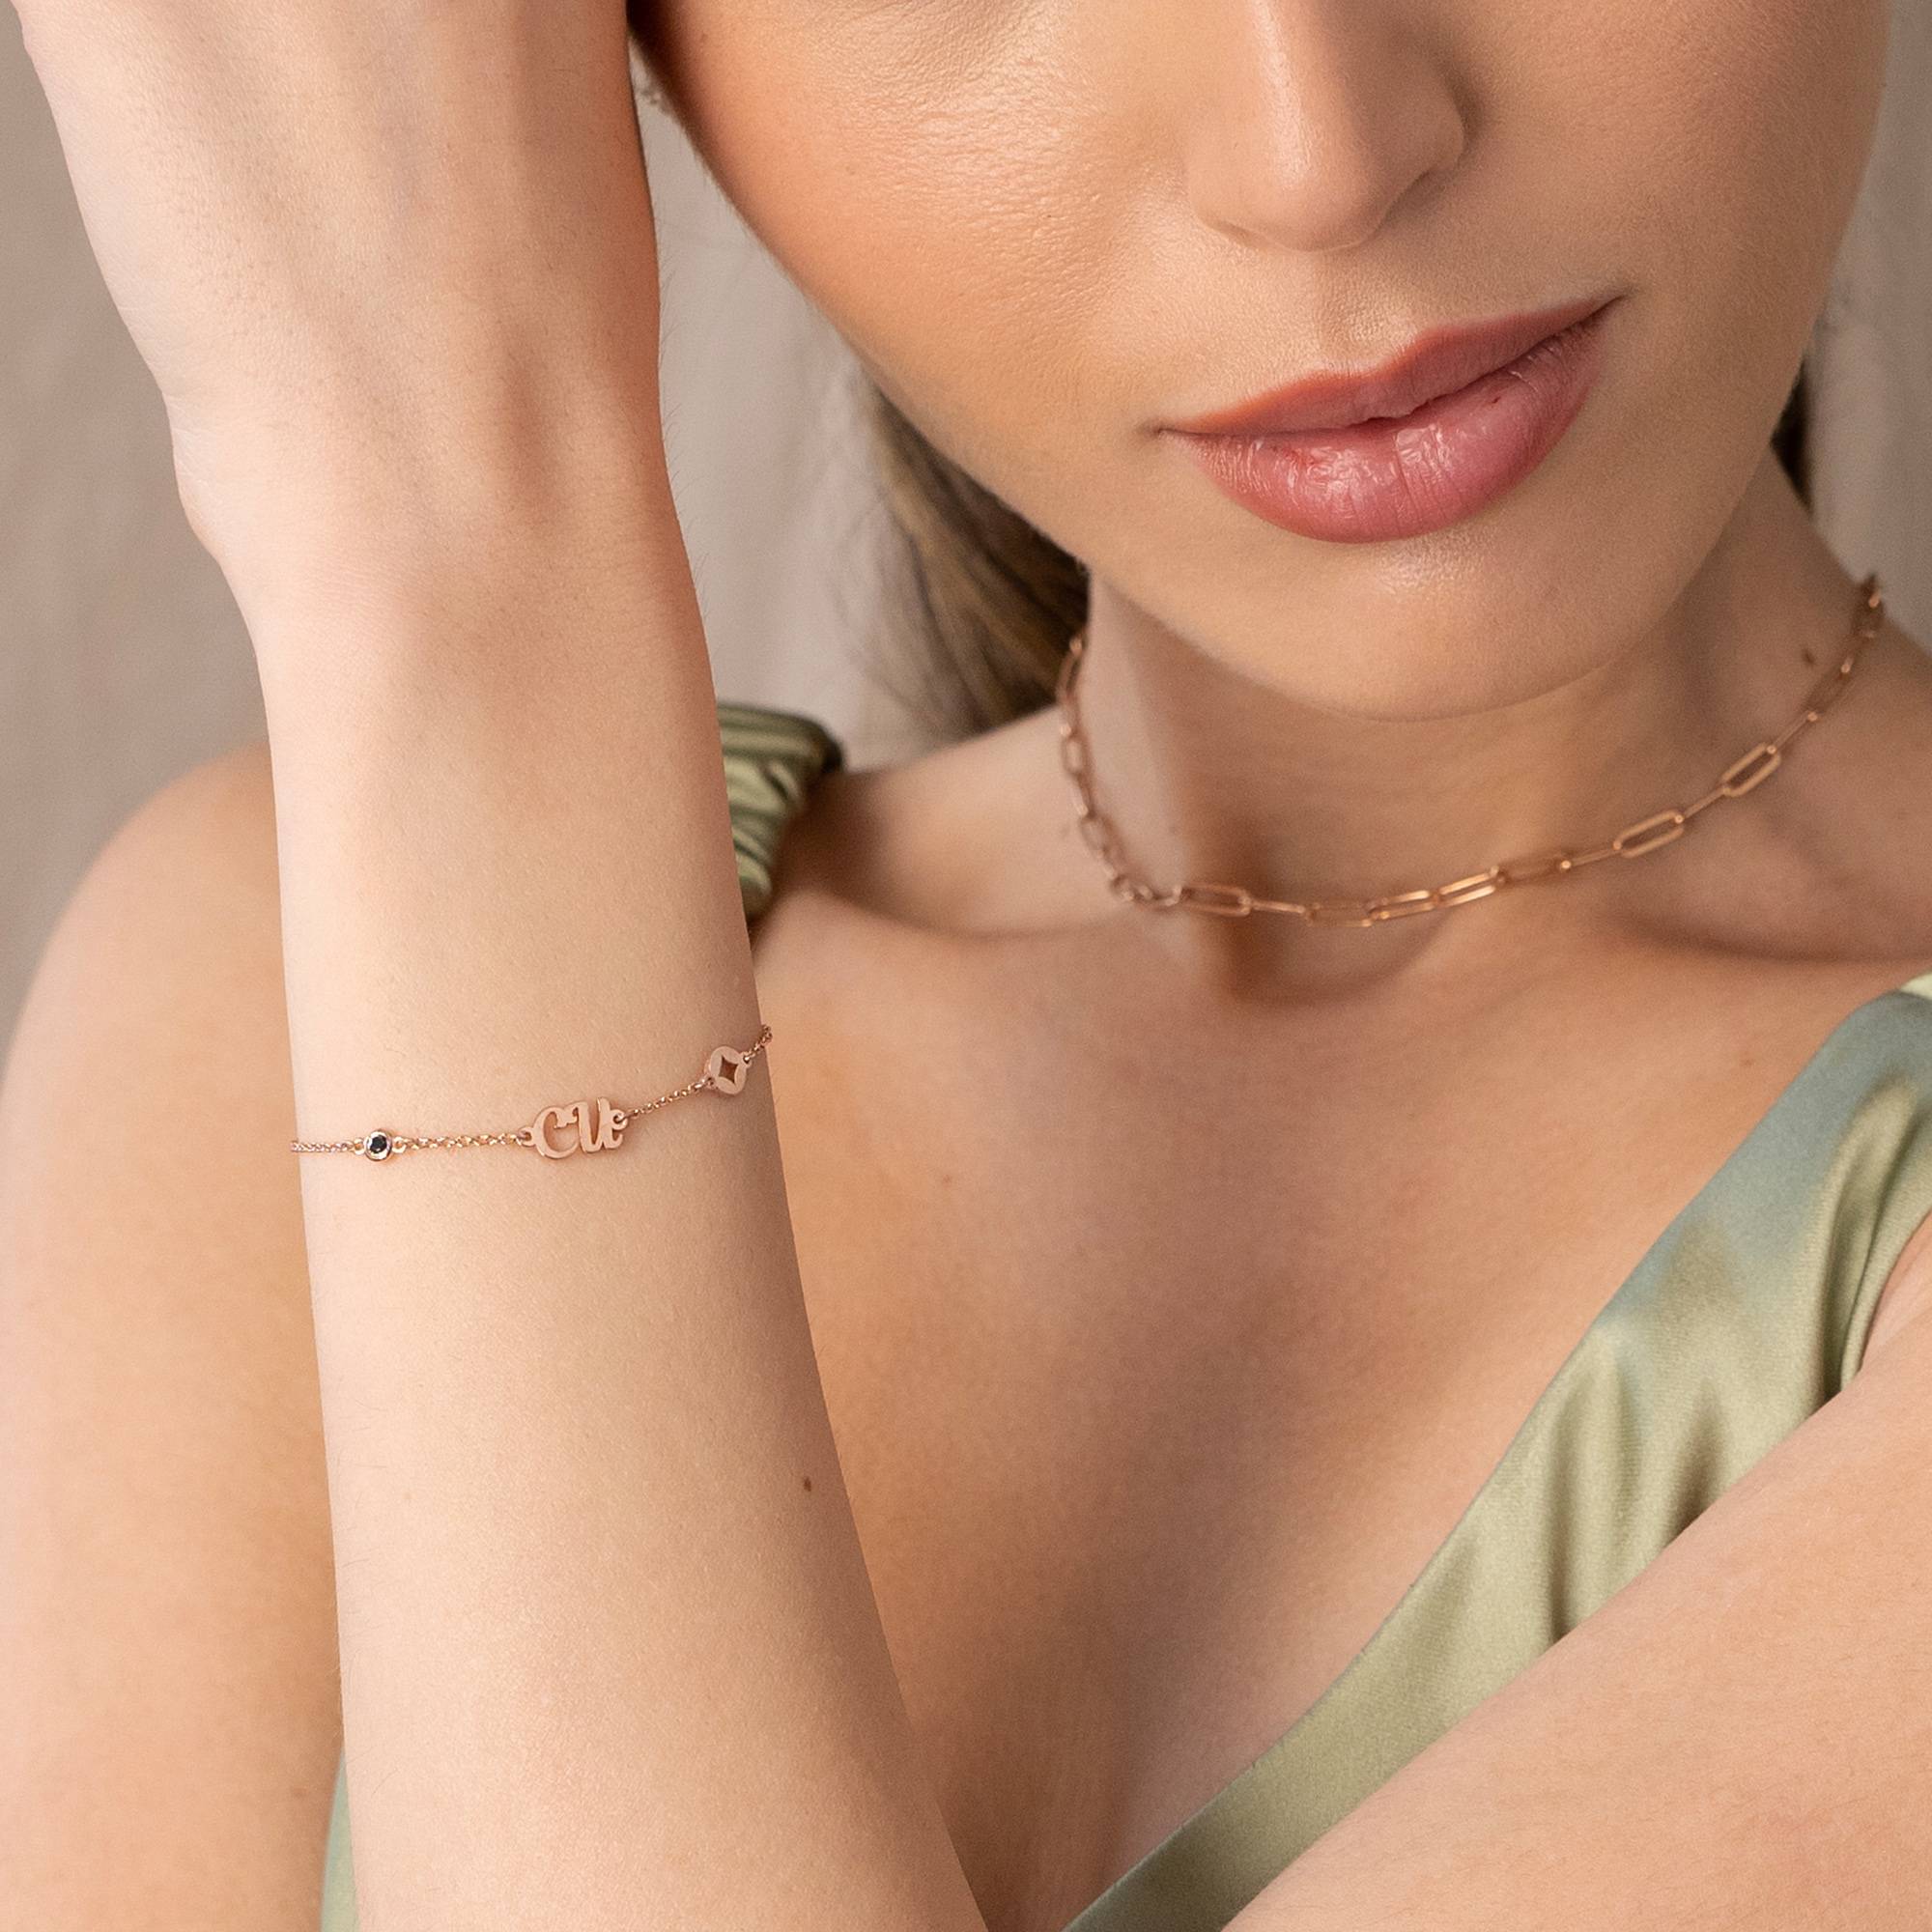 18k Rosé Vergulde Bridget Ster Initiaal Armband/Enkelbandje met Edelsteen-5 Productfoto